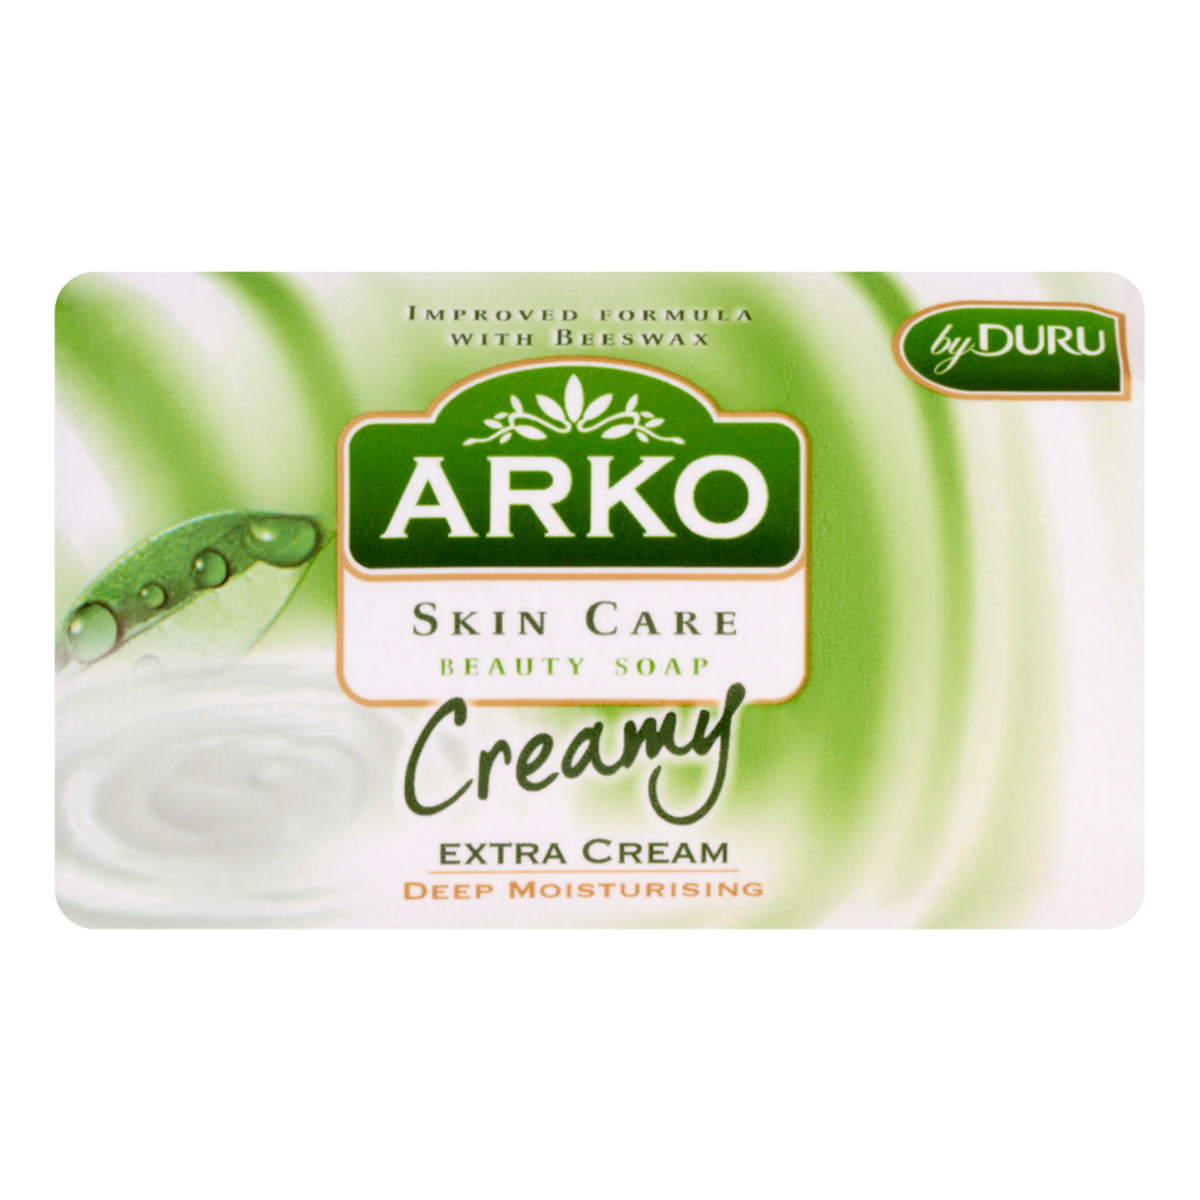 Arko Extra Cream Creamy Mydło W Kostce Kremowe 90g